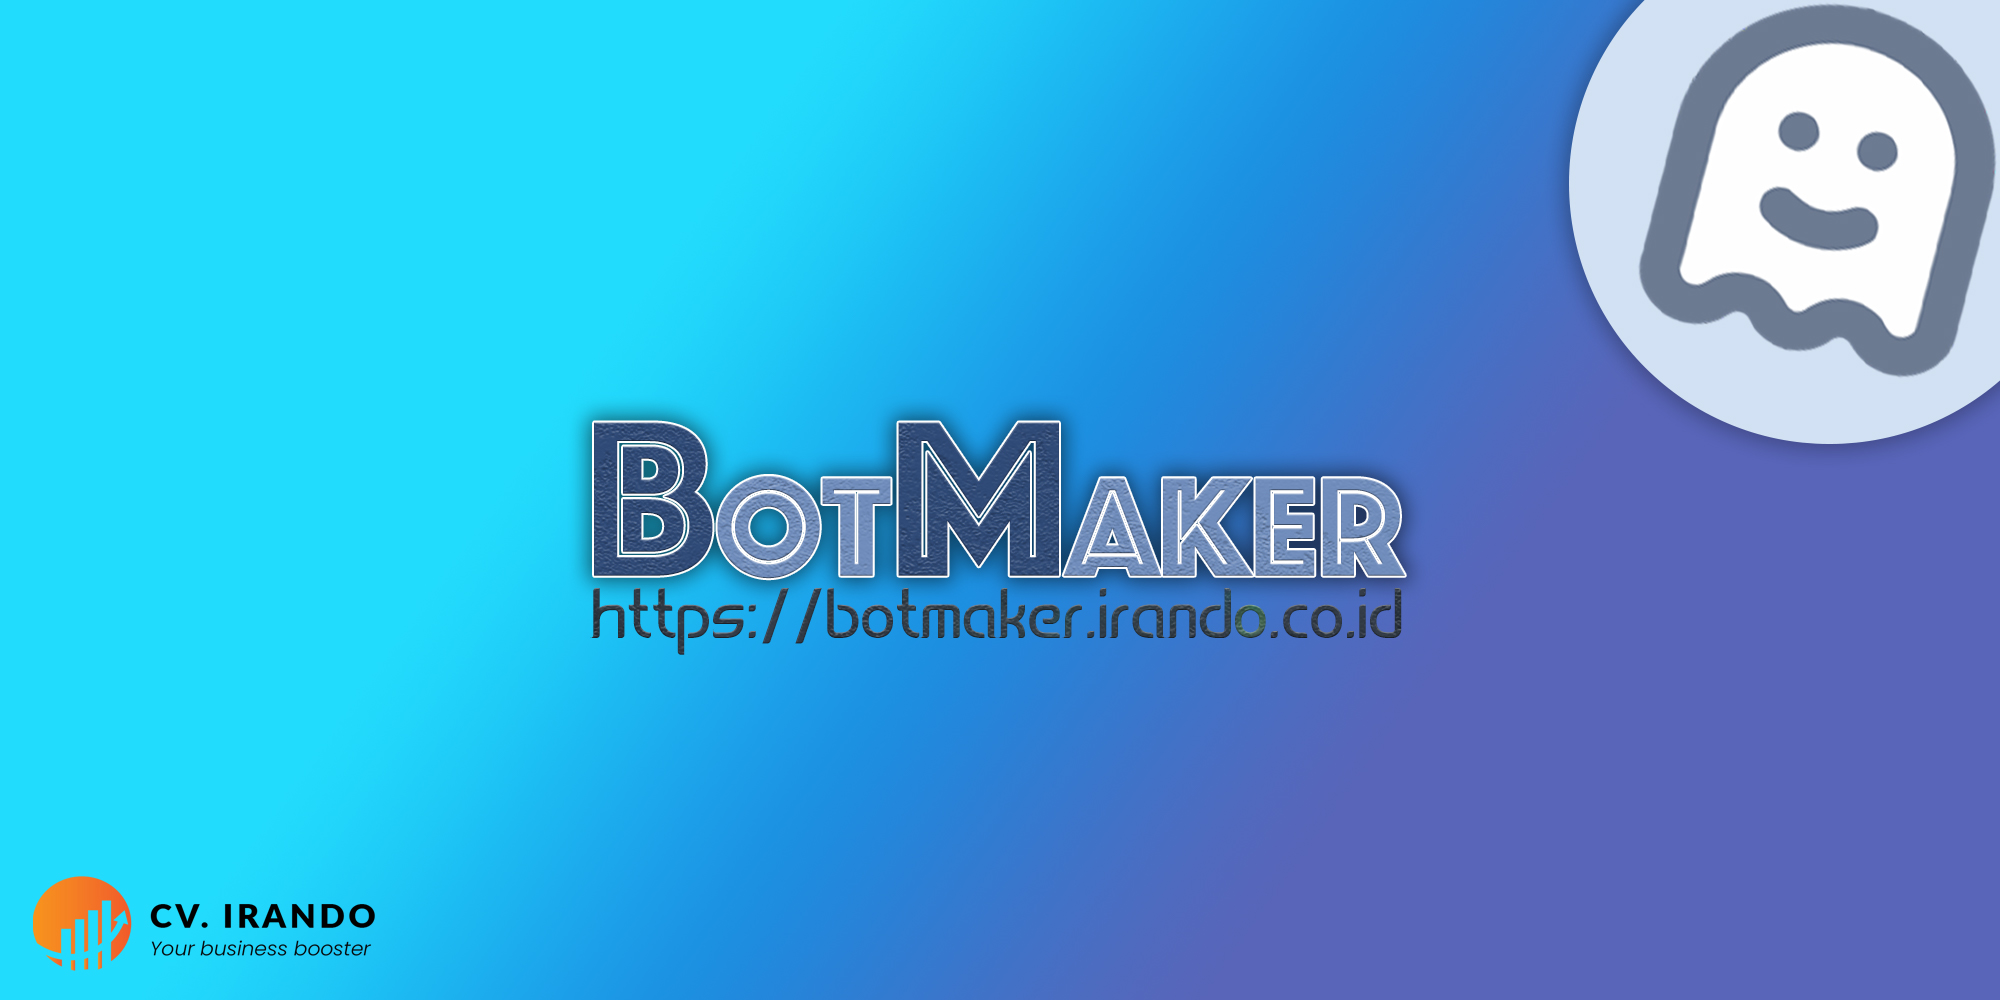 BotMaker